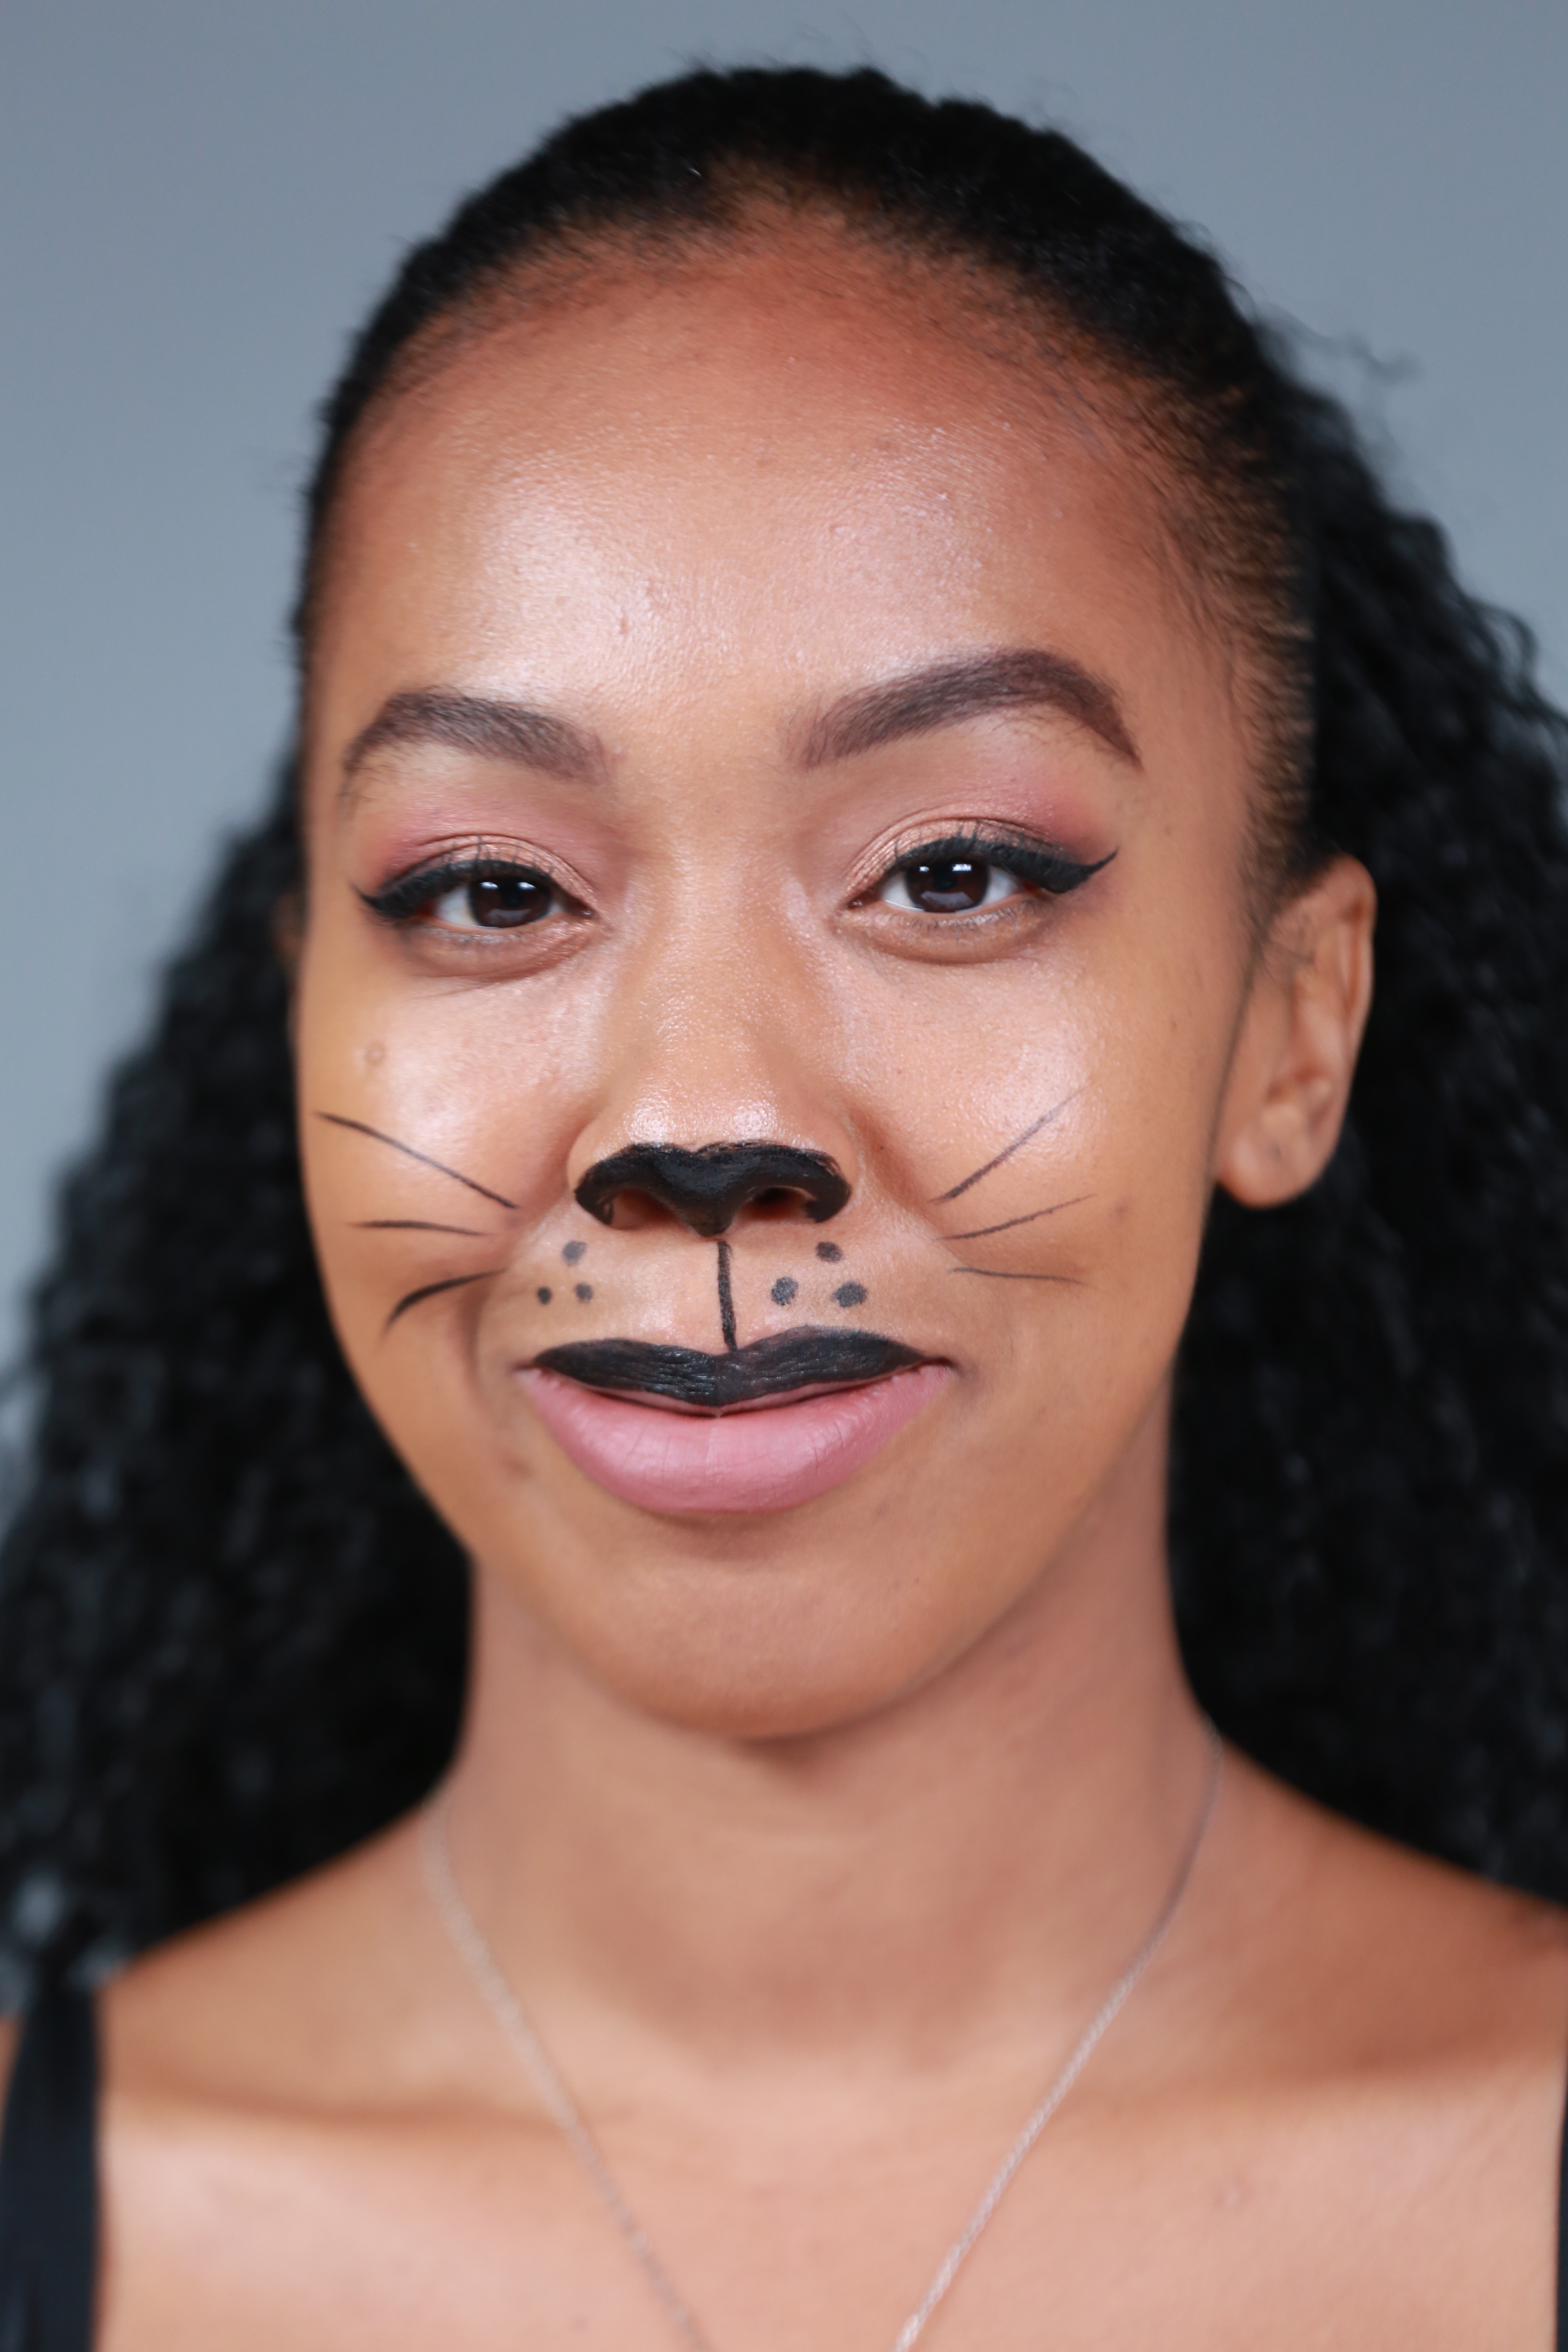 Diy Makeup To Get A Cat Look